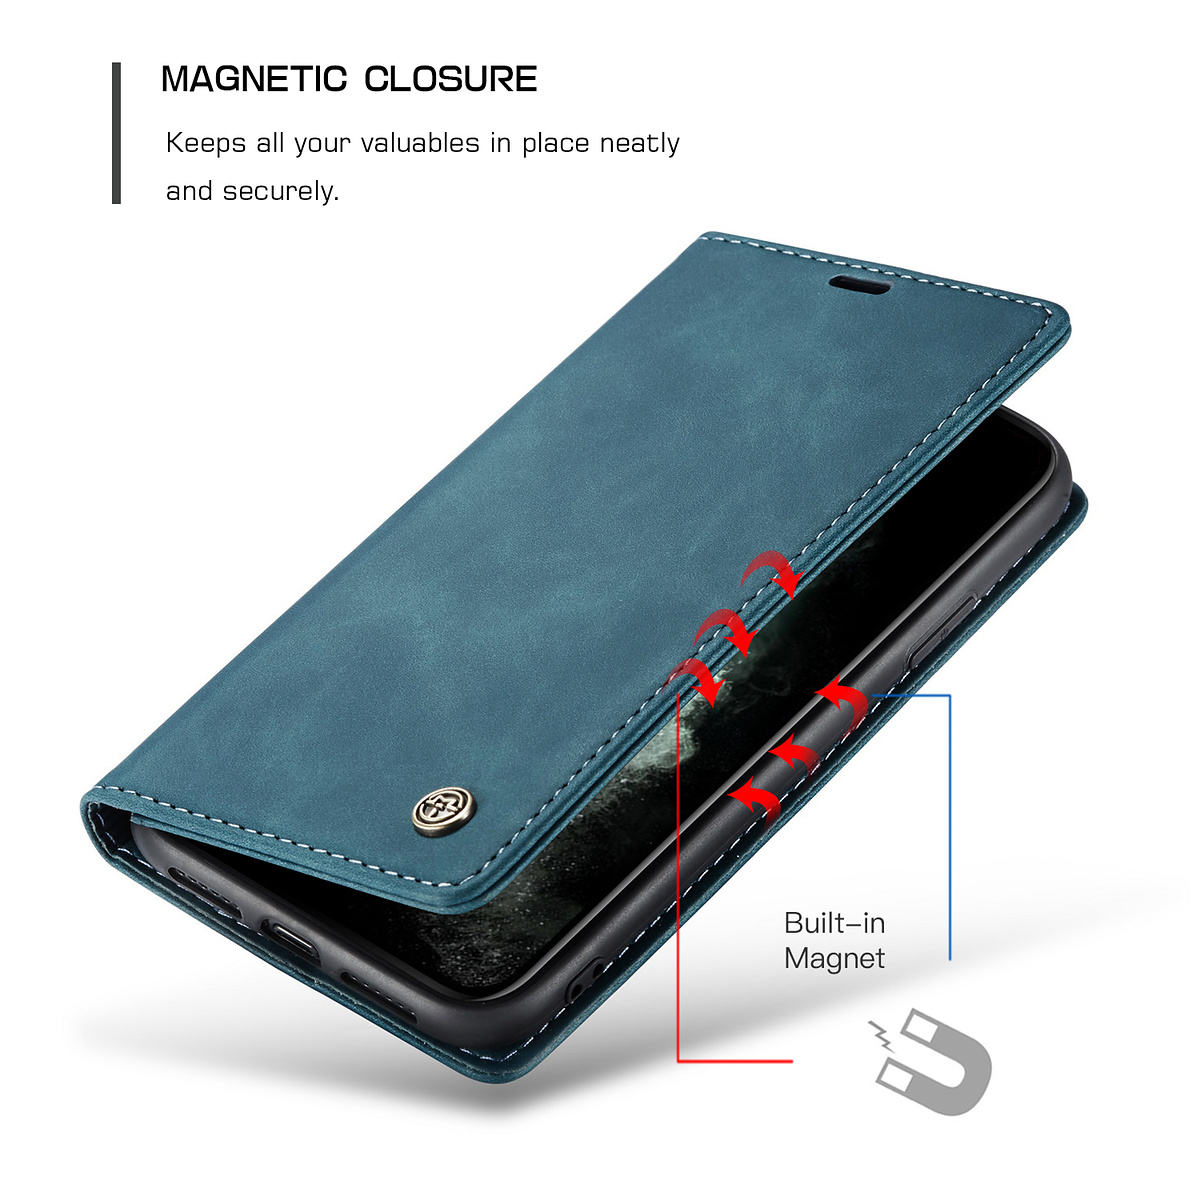 CaseMe plånboksfodral, iPhone 11 Pro Max, blå